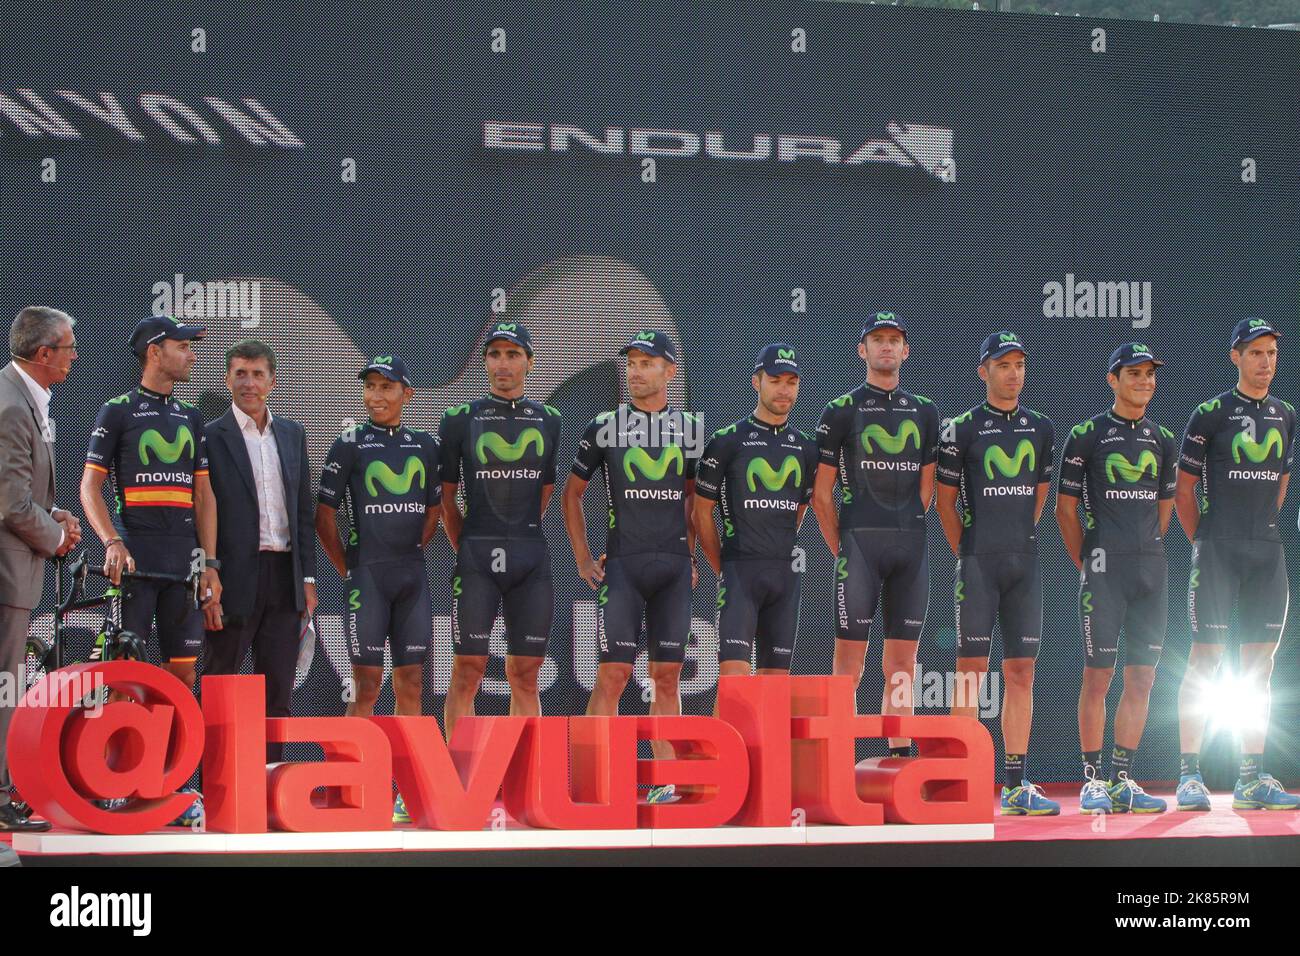 Movistar team alla presentazione della vuelta a espana 2015, tra cui tour de france 2nd e 3rd posti uomini, Alejandro Valverde e Nairo Alexander Quintana sulla sinistra Foto Stock